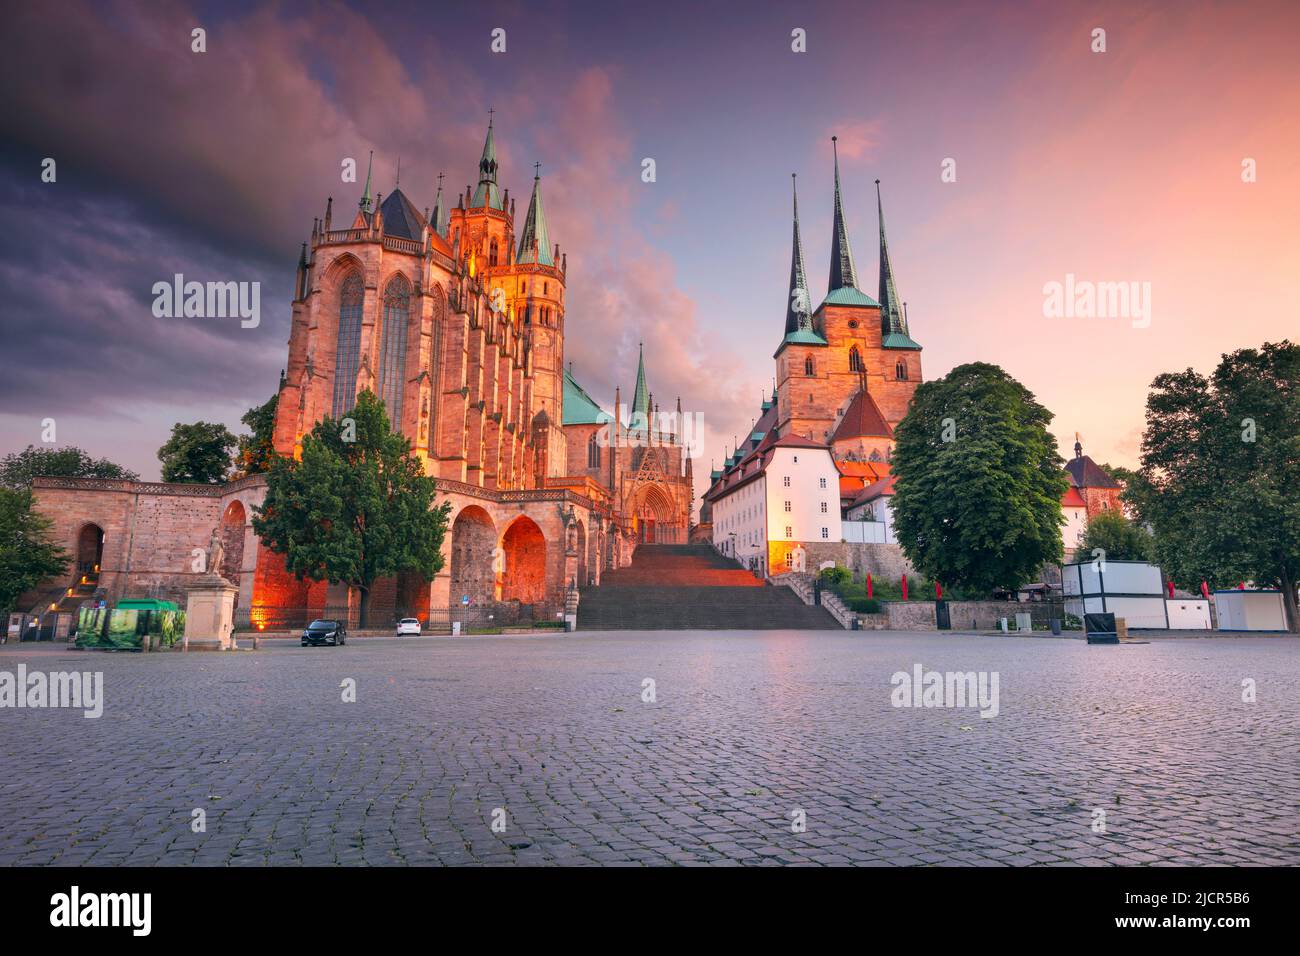 Erfurt, Germania. Immagine del paesaggio urbano del centro di Erfurt, Germania con la Cattedrale di Erfurt al tramonto estivo. Foto Stock